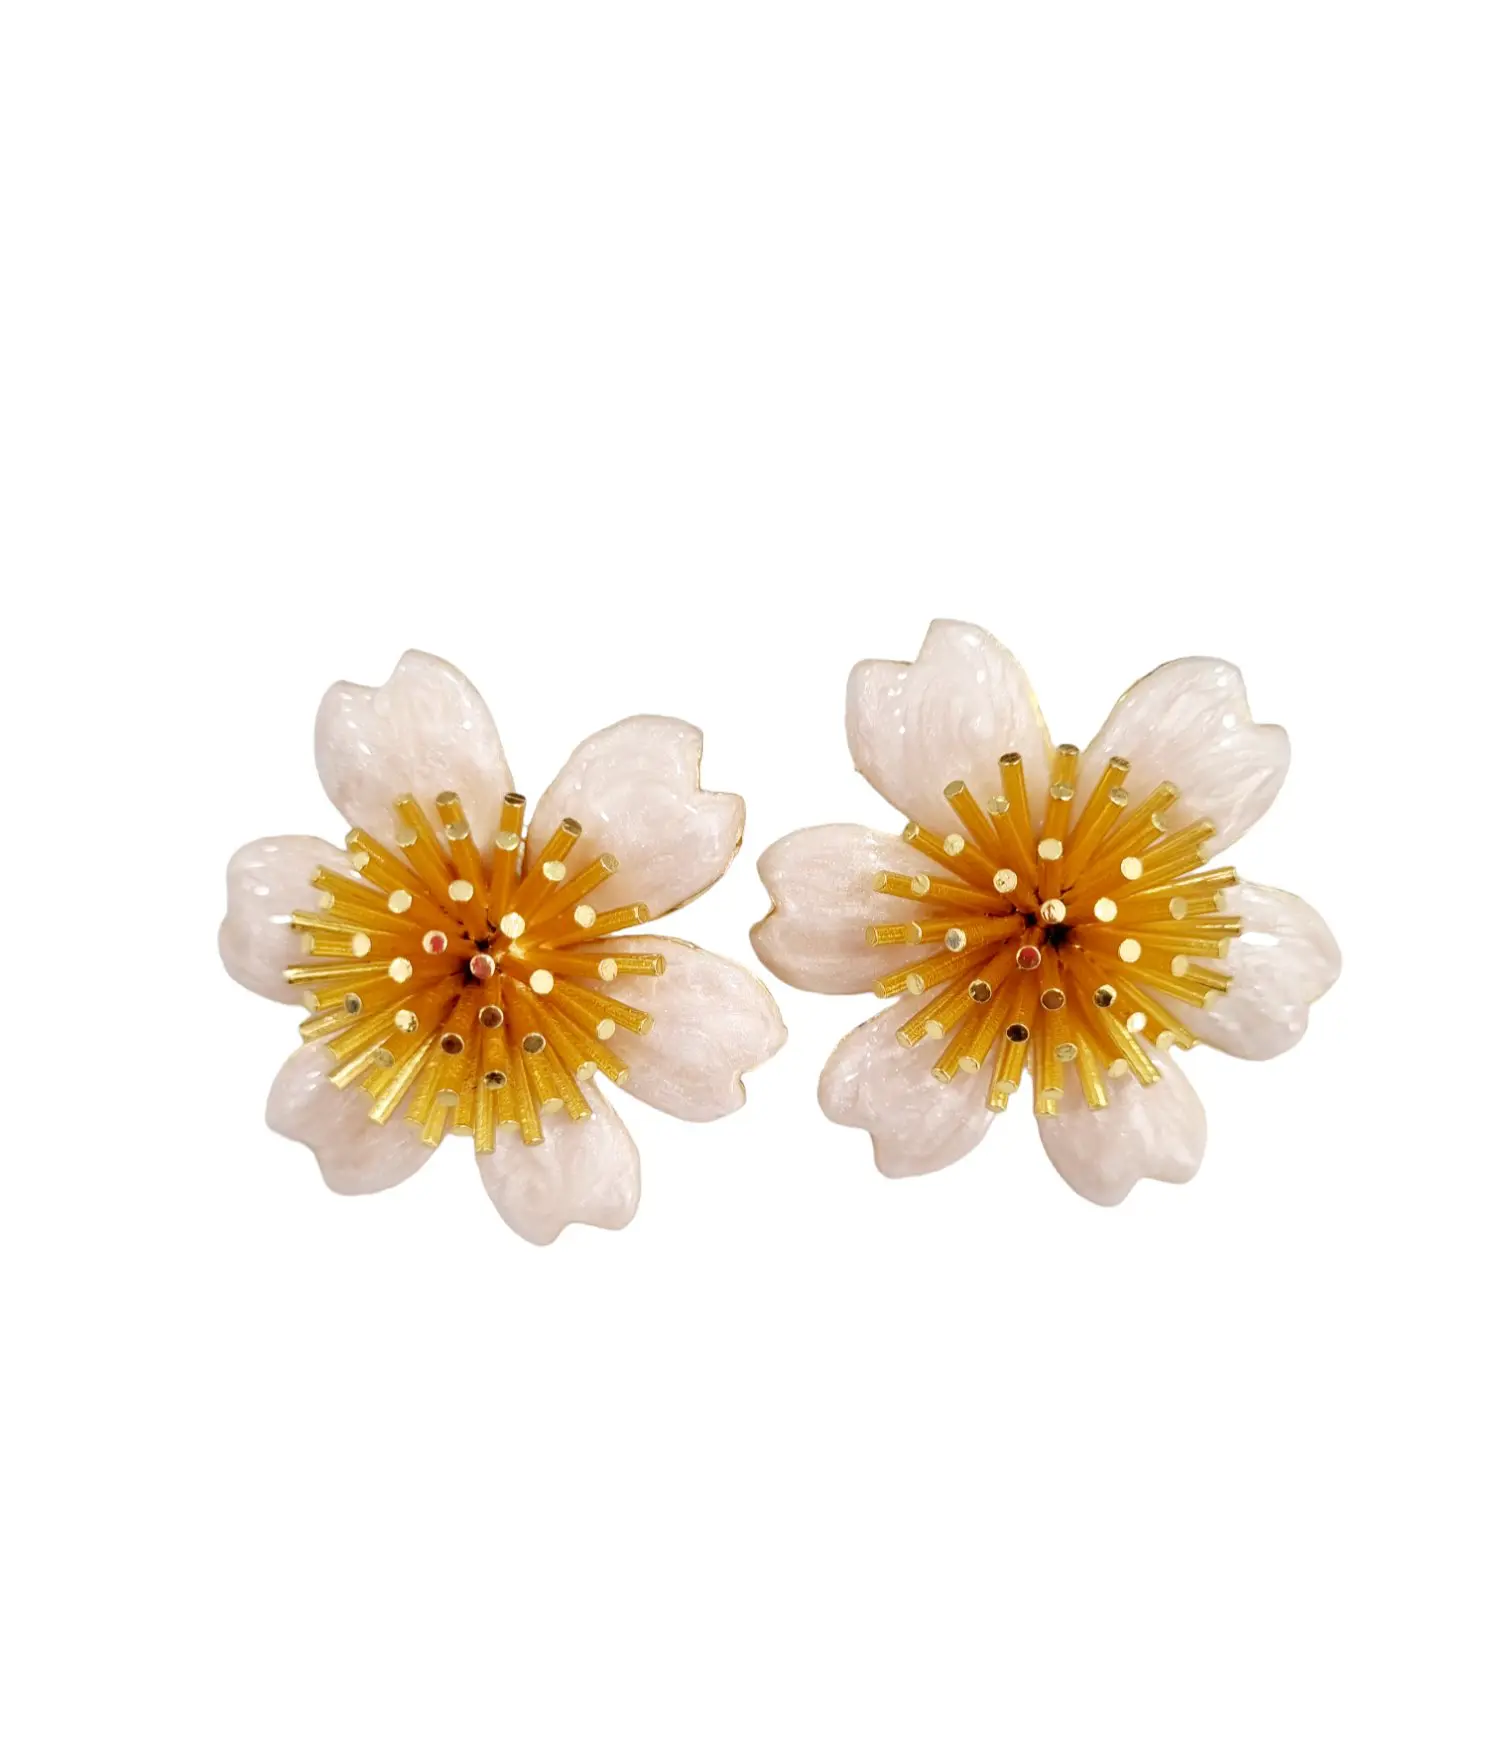 Boucles d'oreilles lobe réalisées avec des fleurs en laiton émaillé. Poids 15g Longueur 2cm taille 4cm